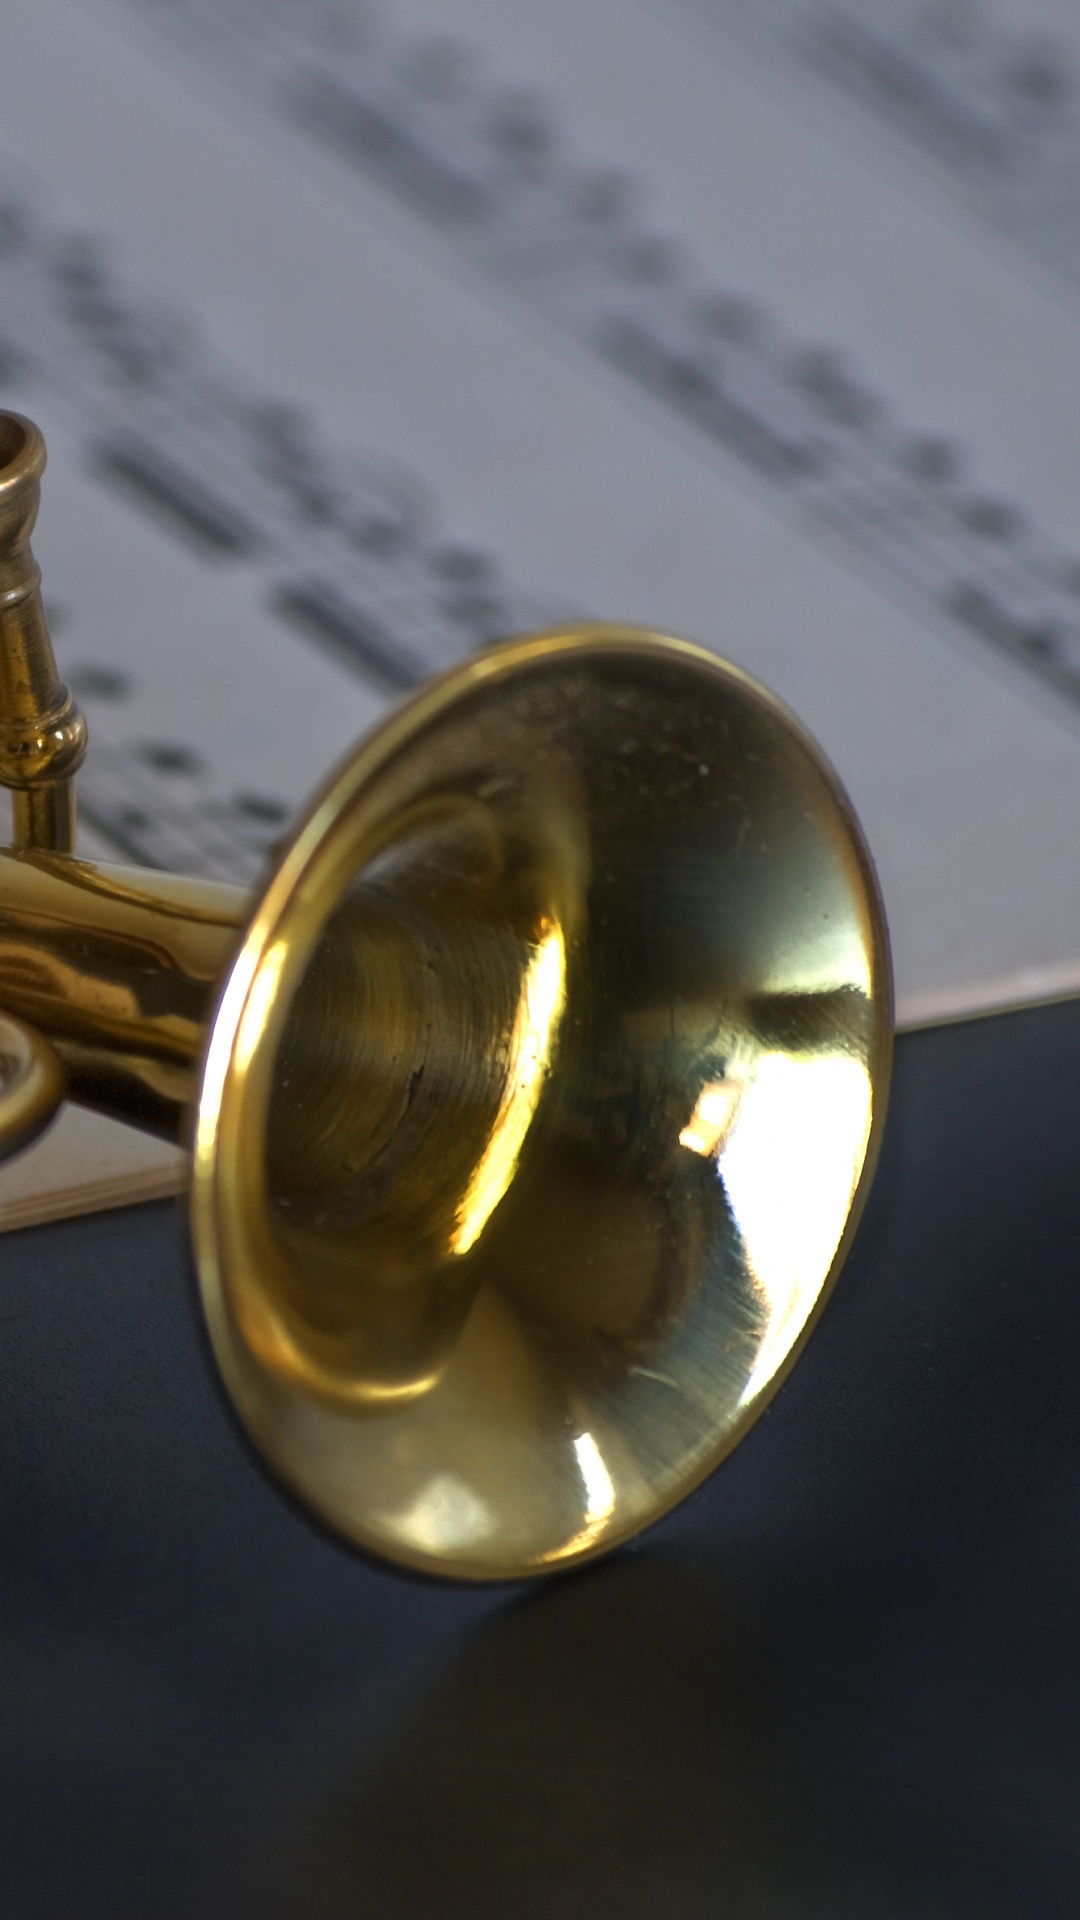 铜管乐器, 风仪器, 喇叭, 黄铜 壁纸 1080x1920 允许